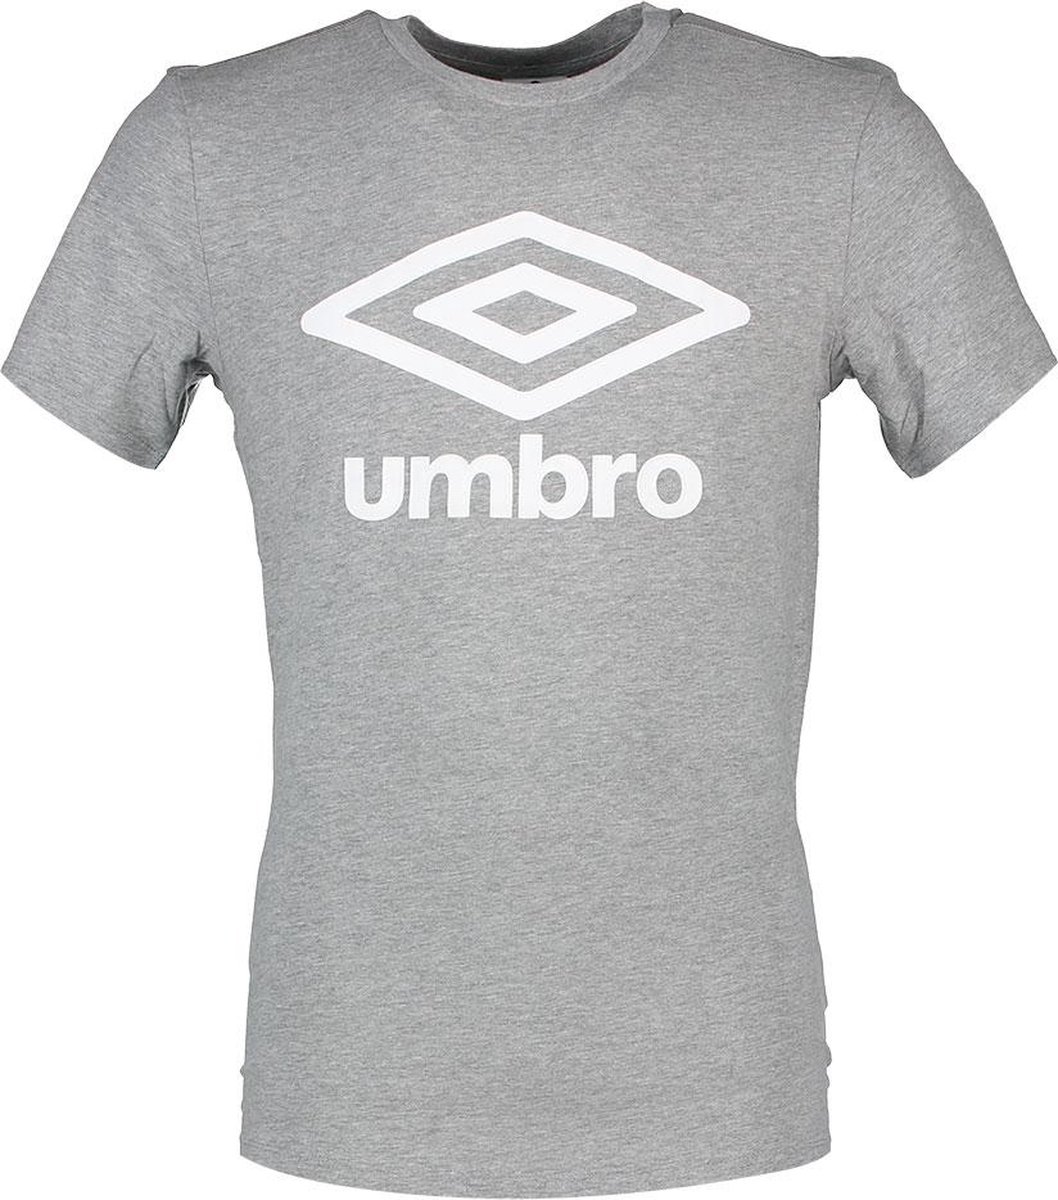 Umbro large logo tee grijs wit UMTM0138, maat L